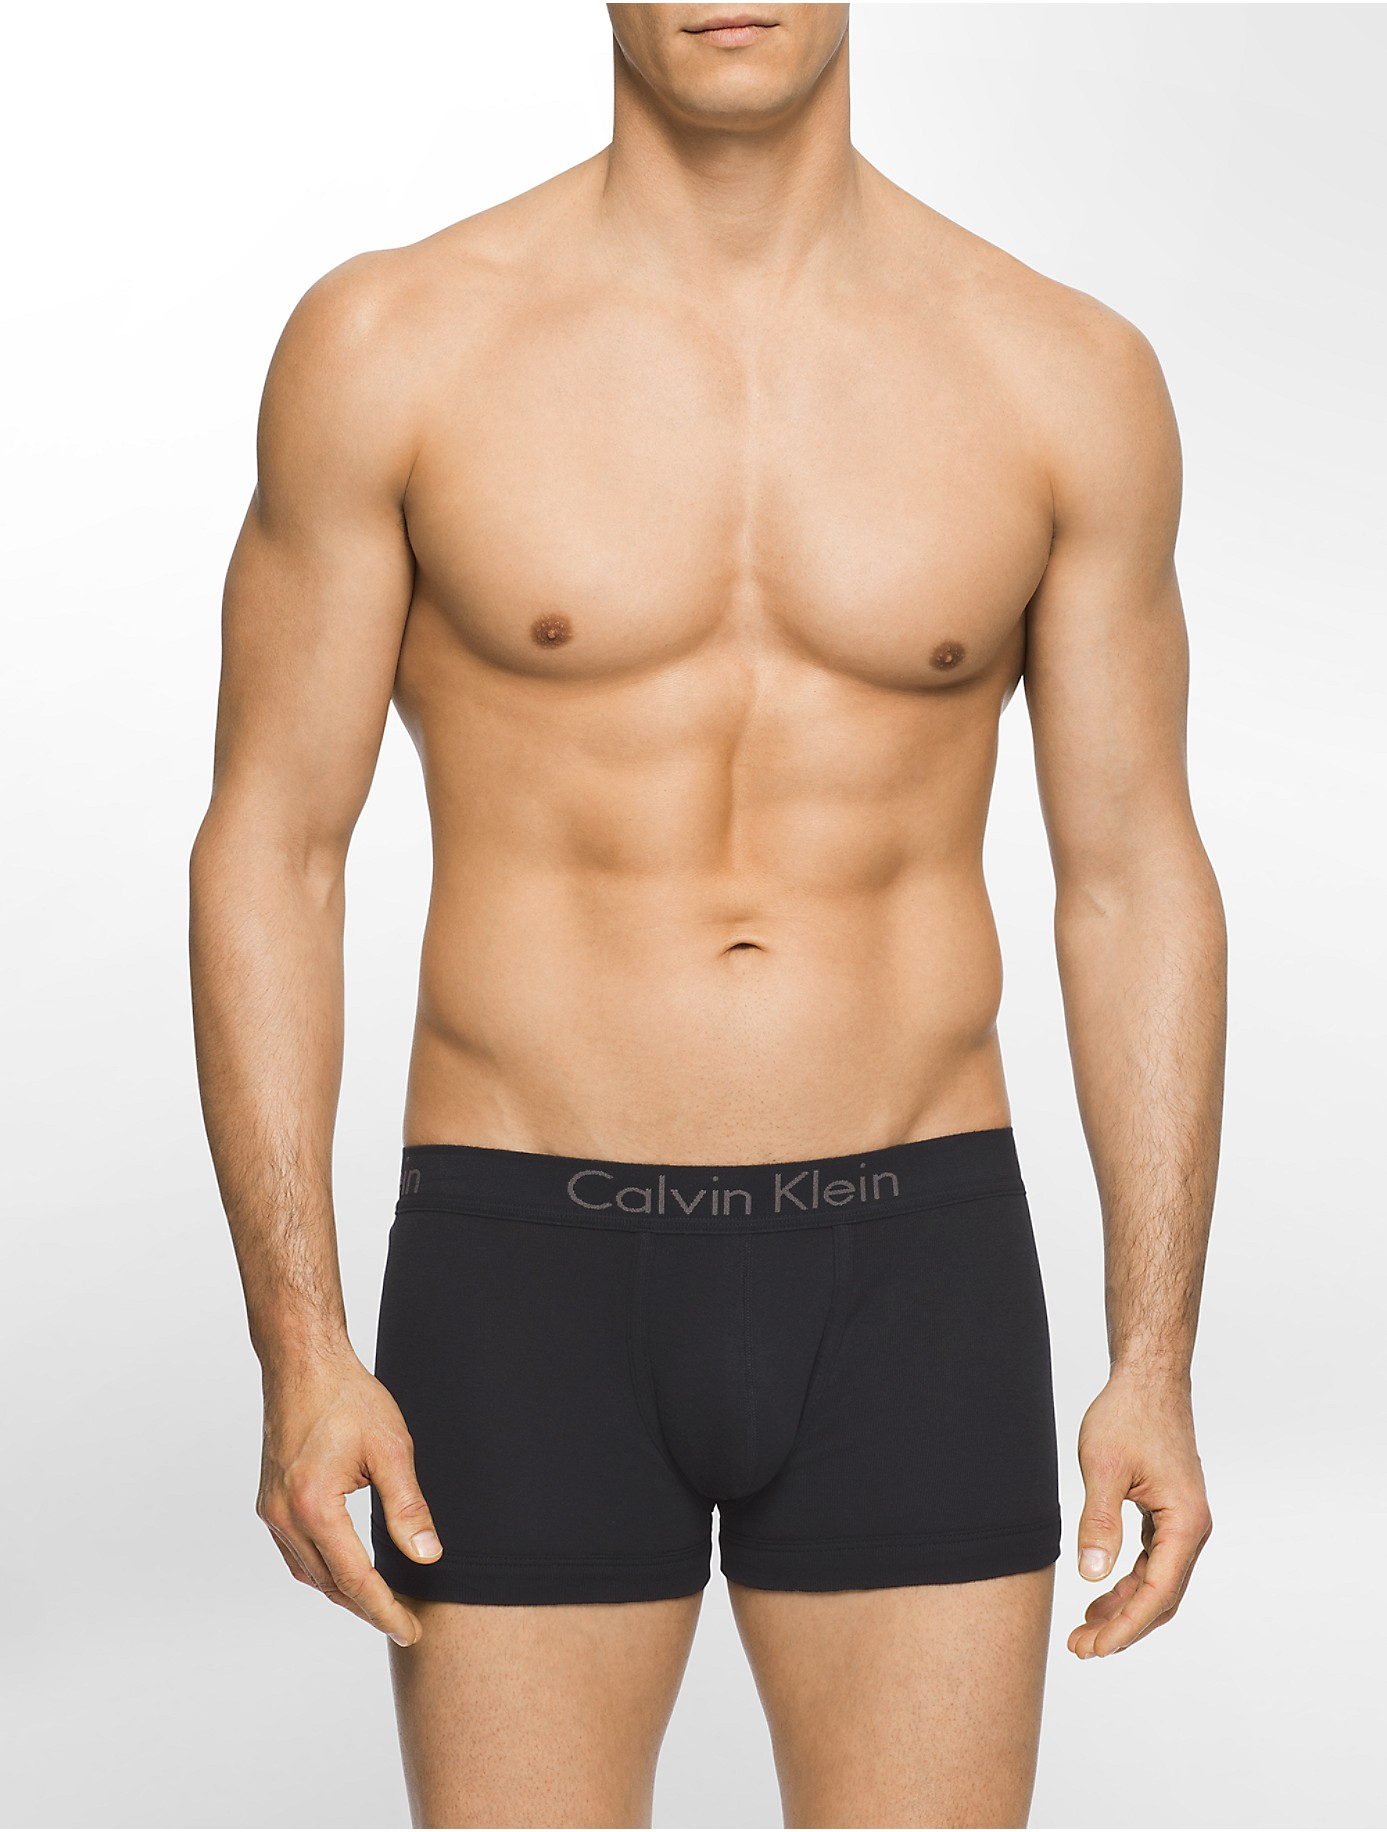 Calvin Klein Underwear Body Boost Trunk in Black for Men - Lyst